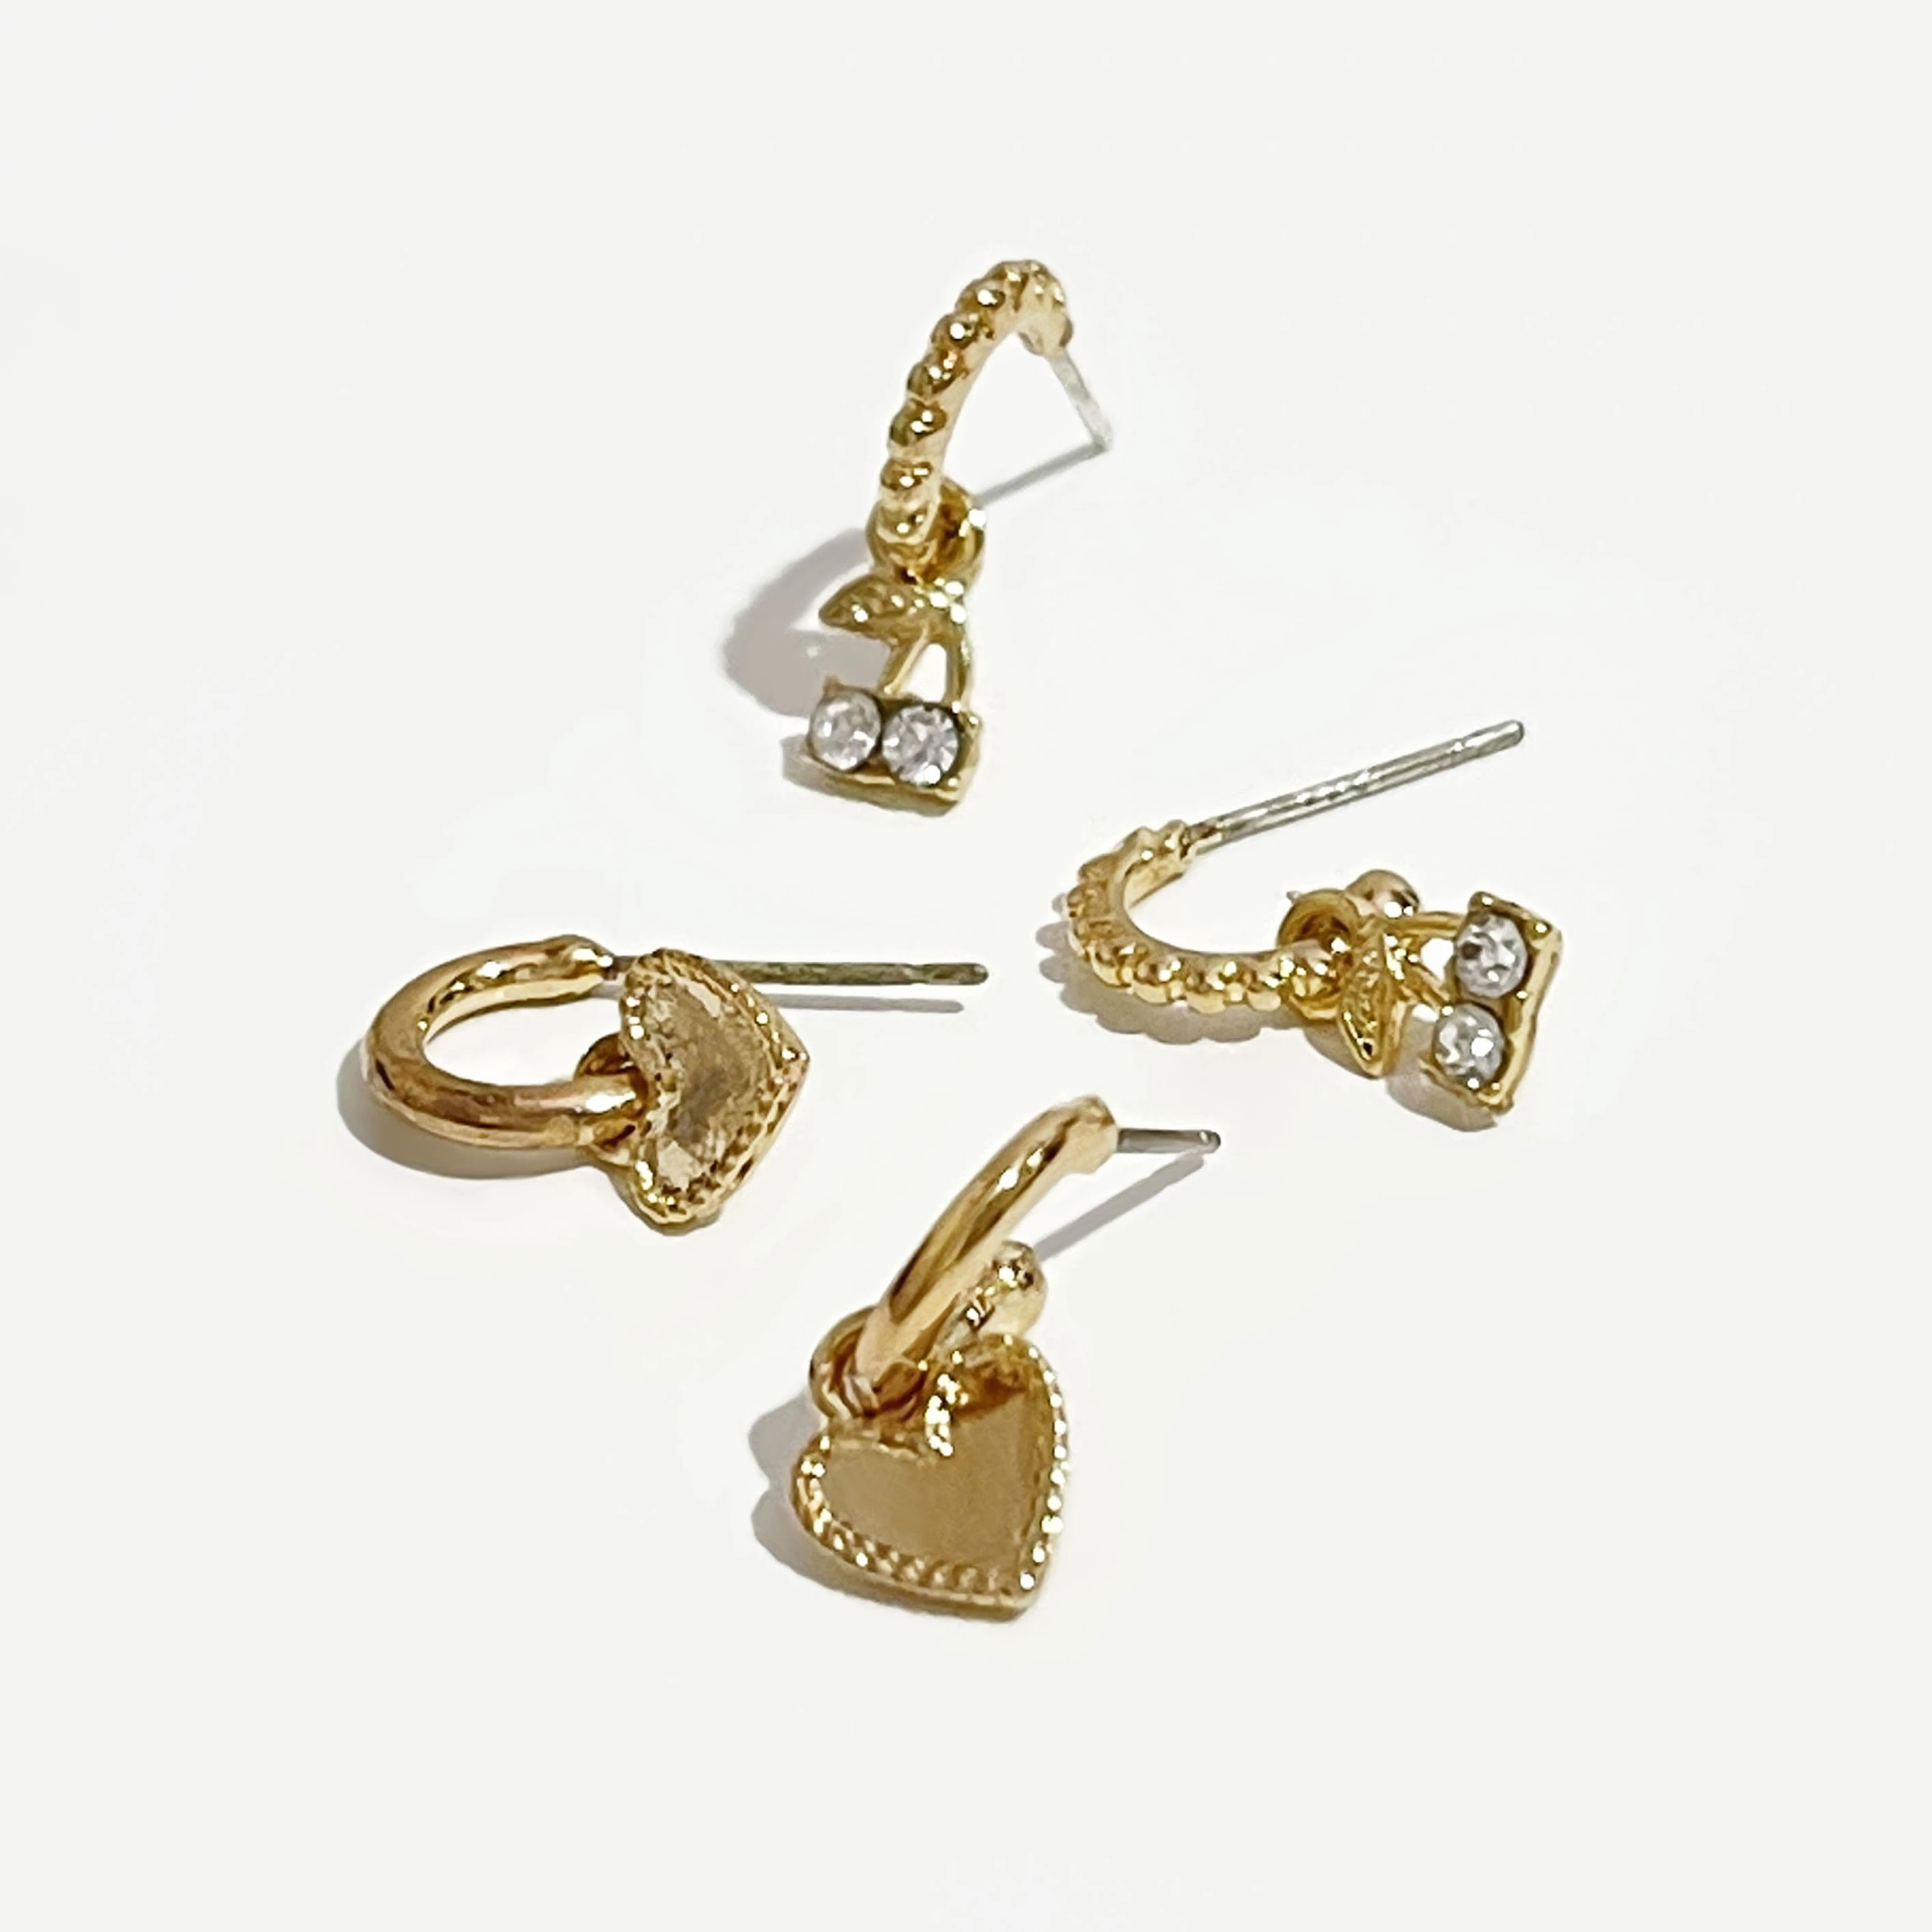 Peri'sBox 4Pcs/Set Love Heart Gold Small Hoop Earrings Cherry Rhinestone Earrings for Women Cute Romantic Earrings 2020 Trendy